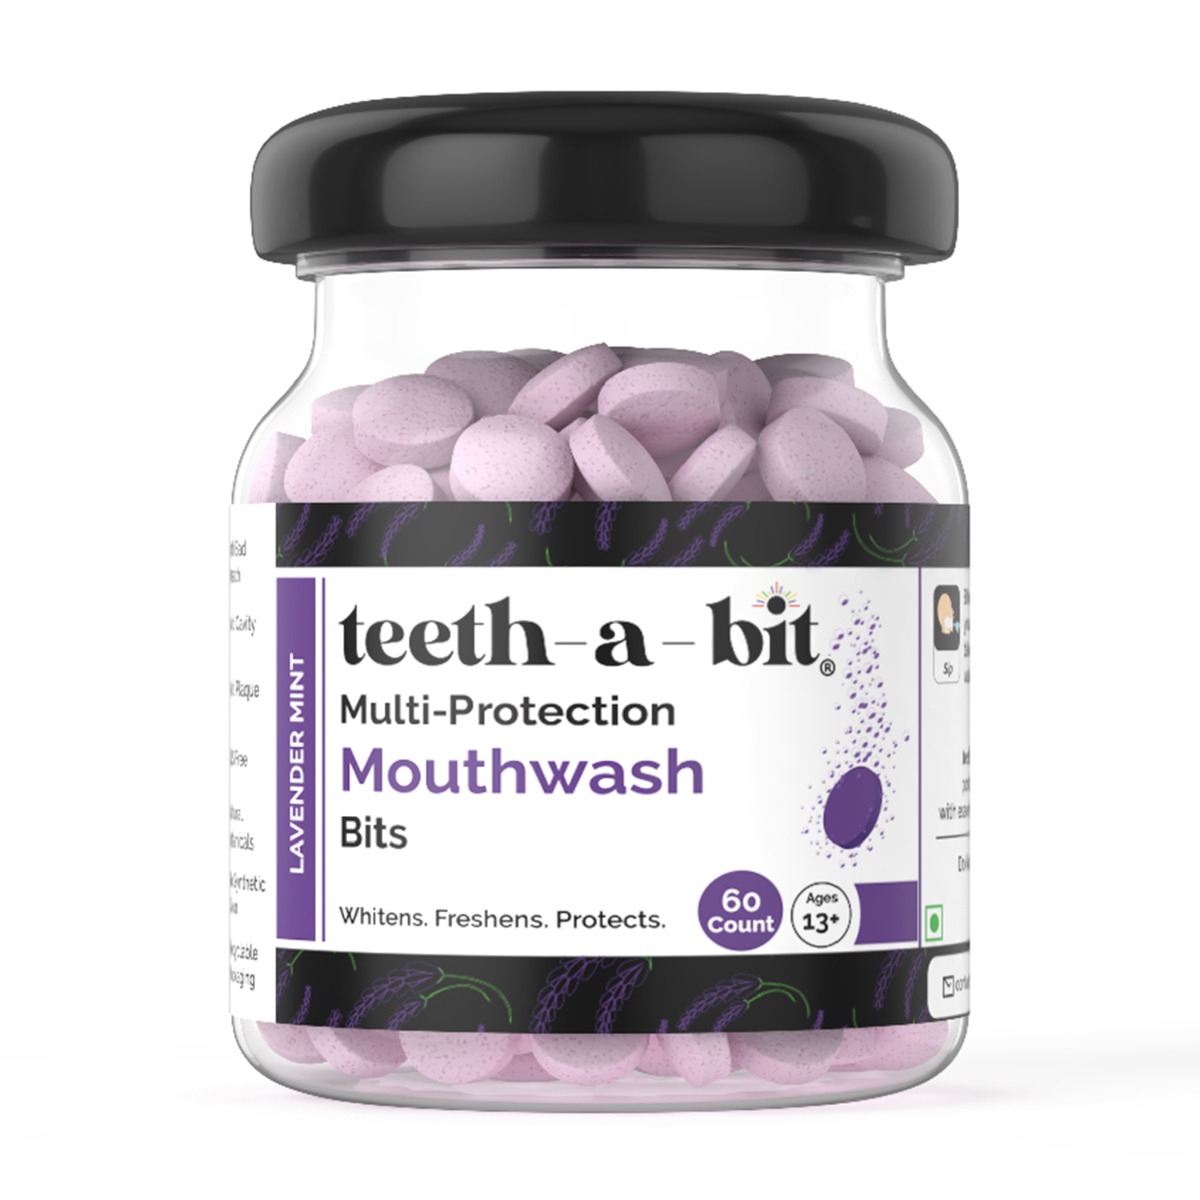 teeth-a-bit Multi-Protection Lavender Mint Mouthwash Bits, 60 Count